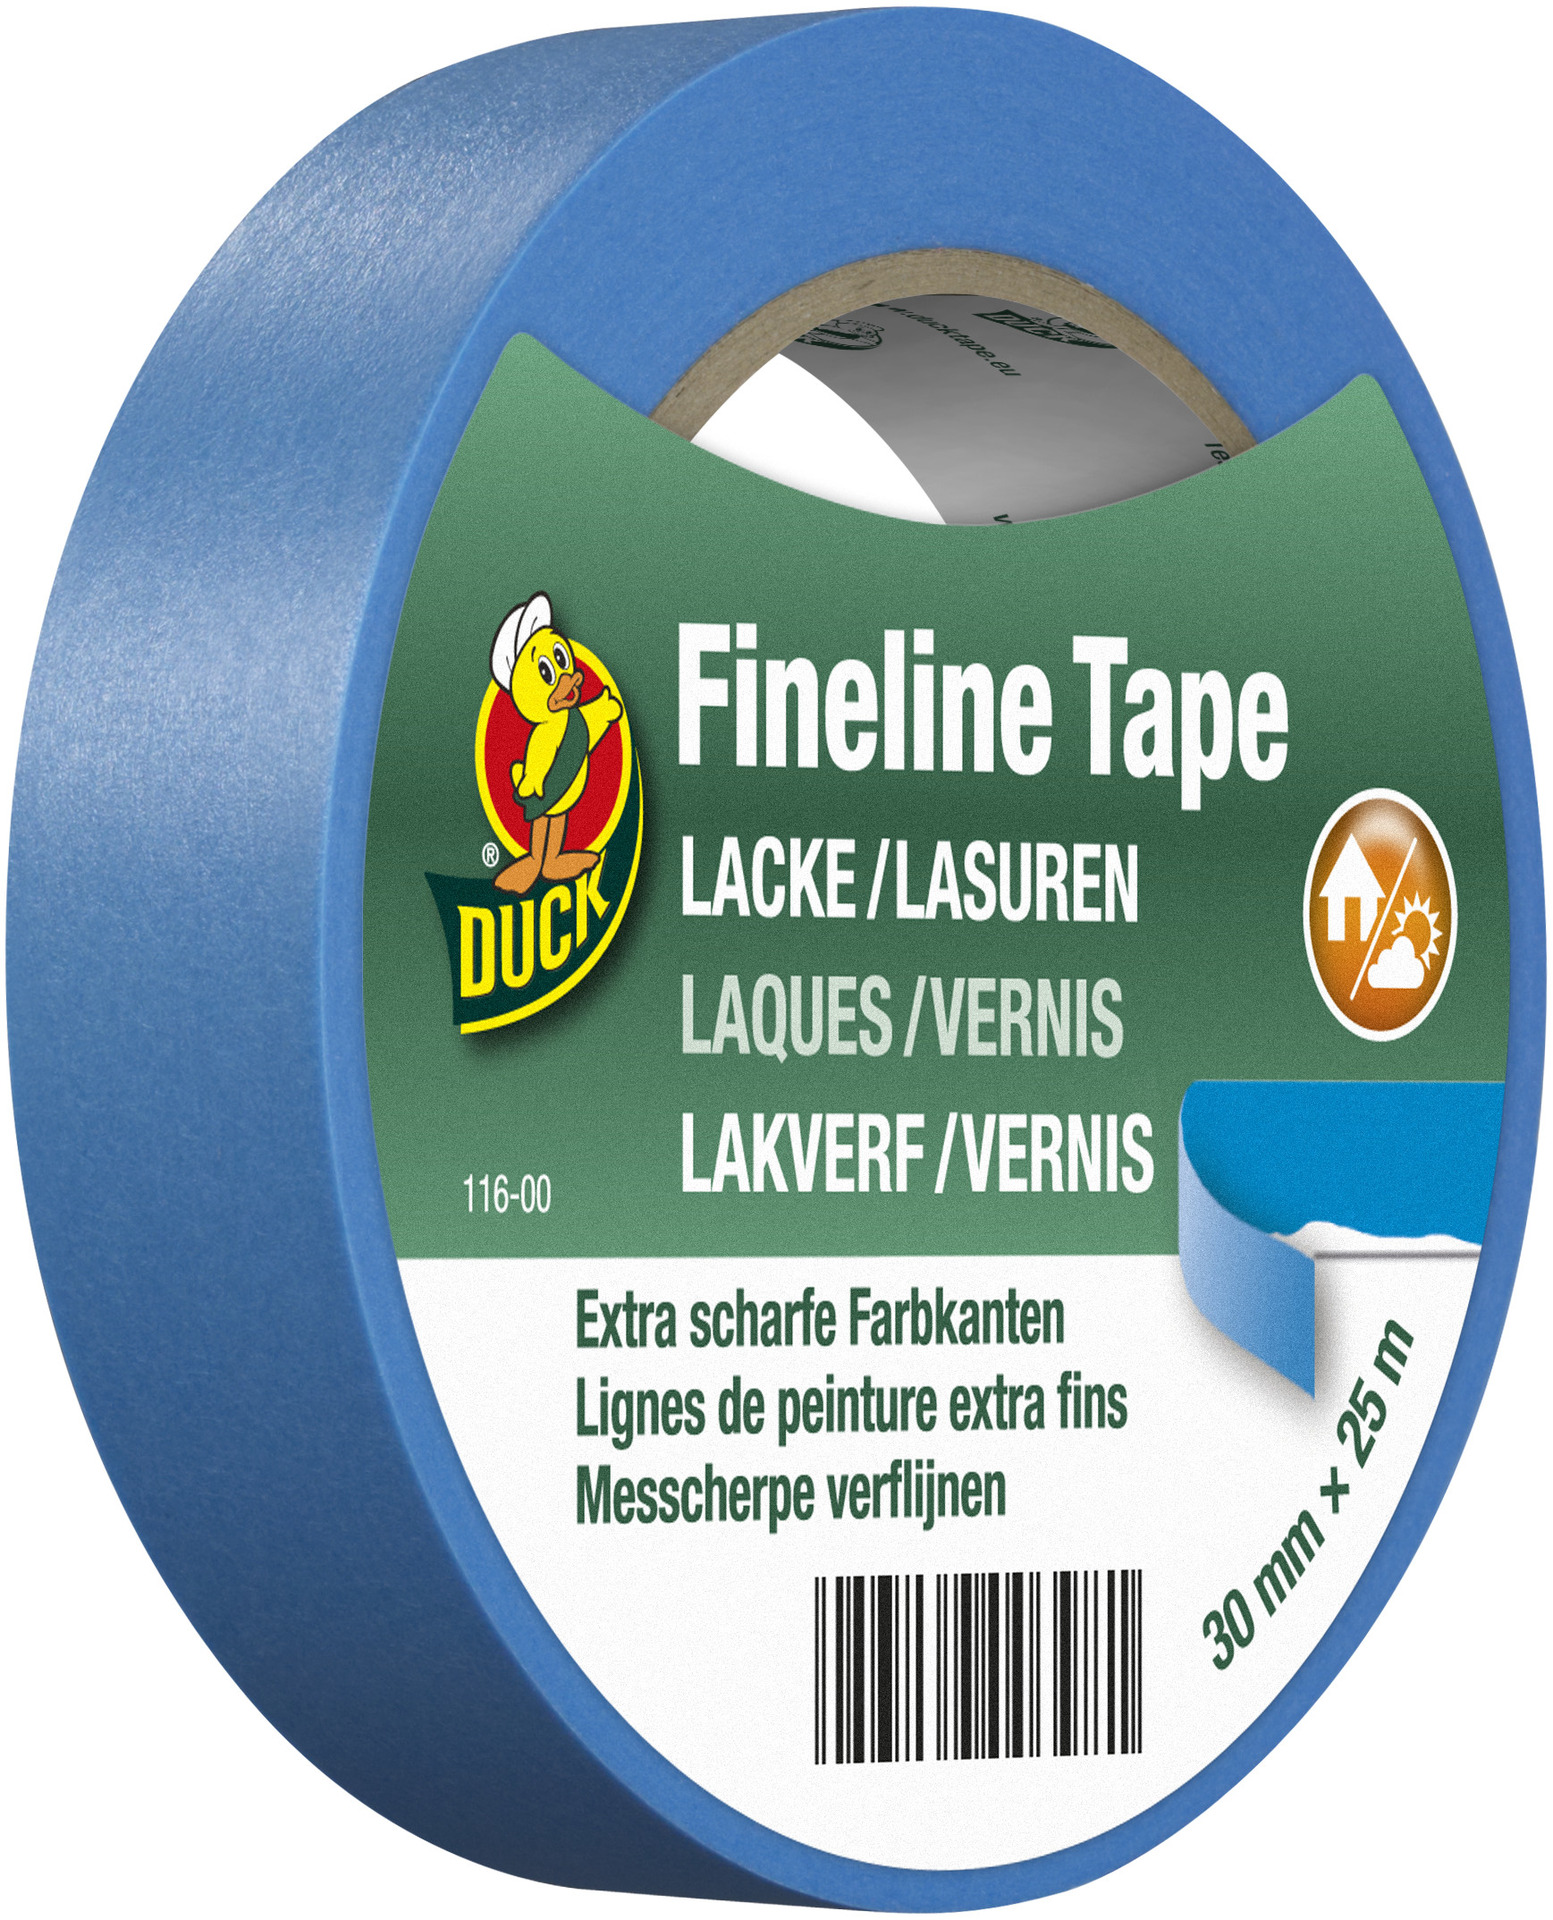 Fineline Tape Lacke / Lasuren